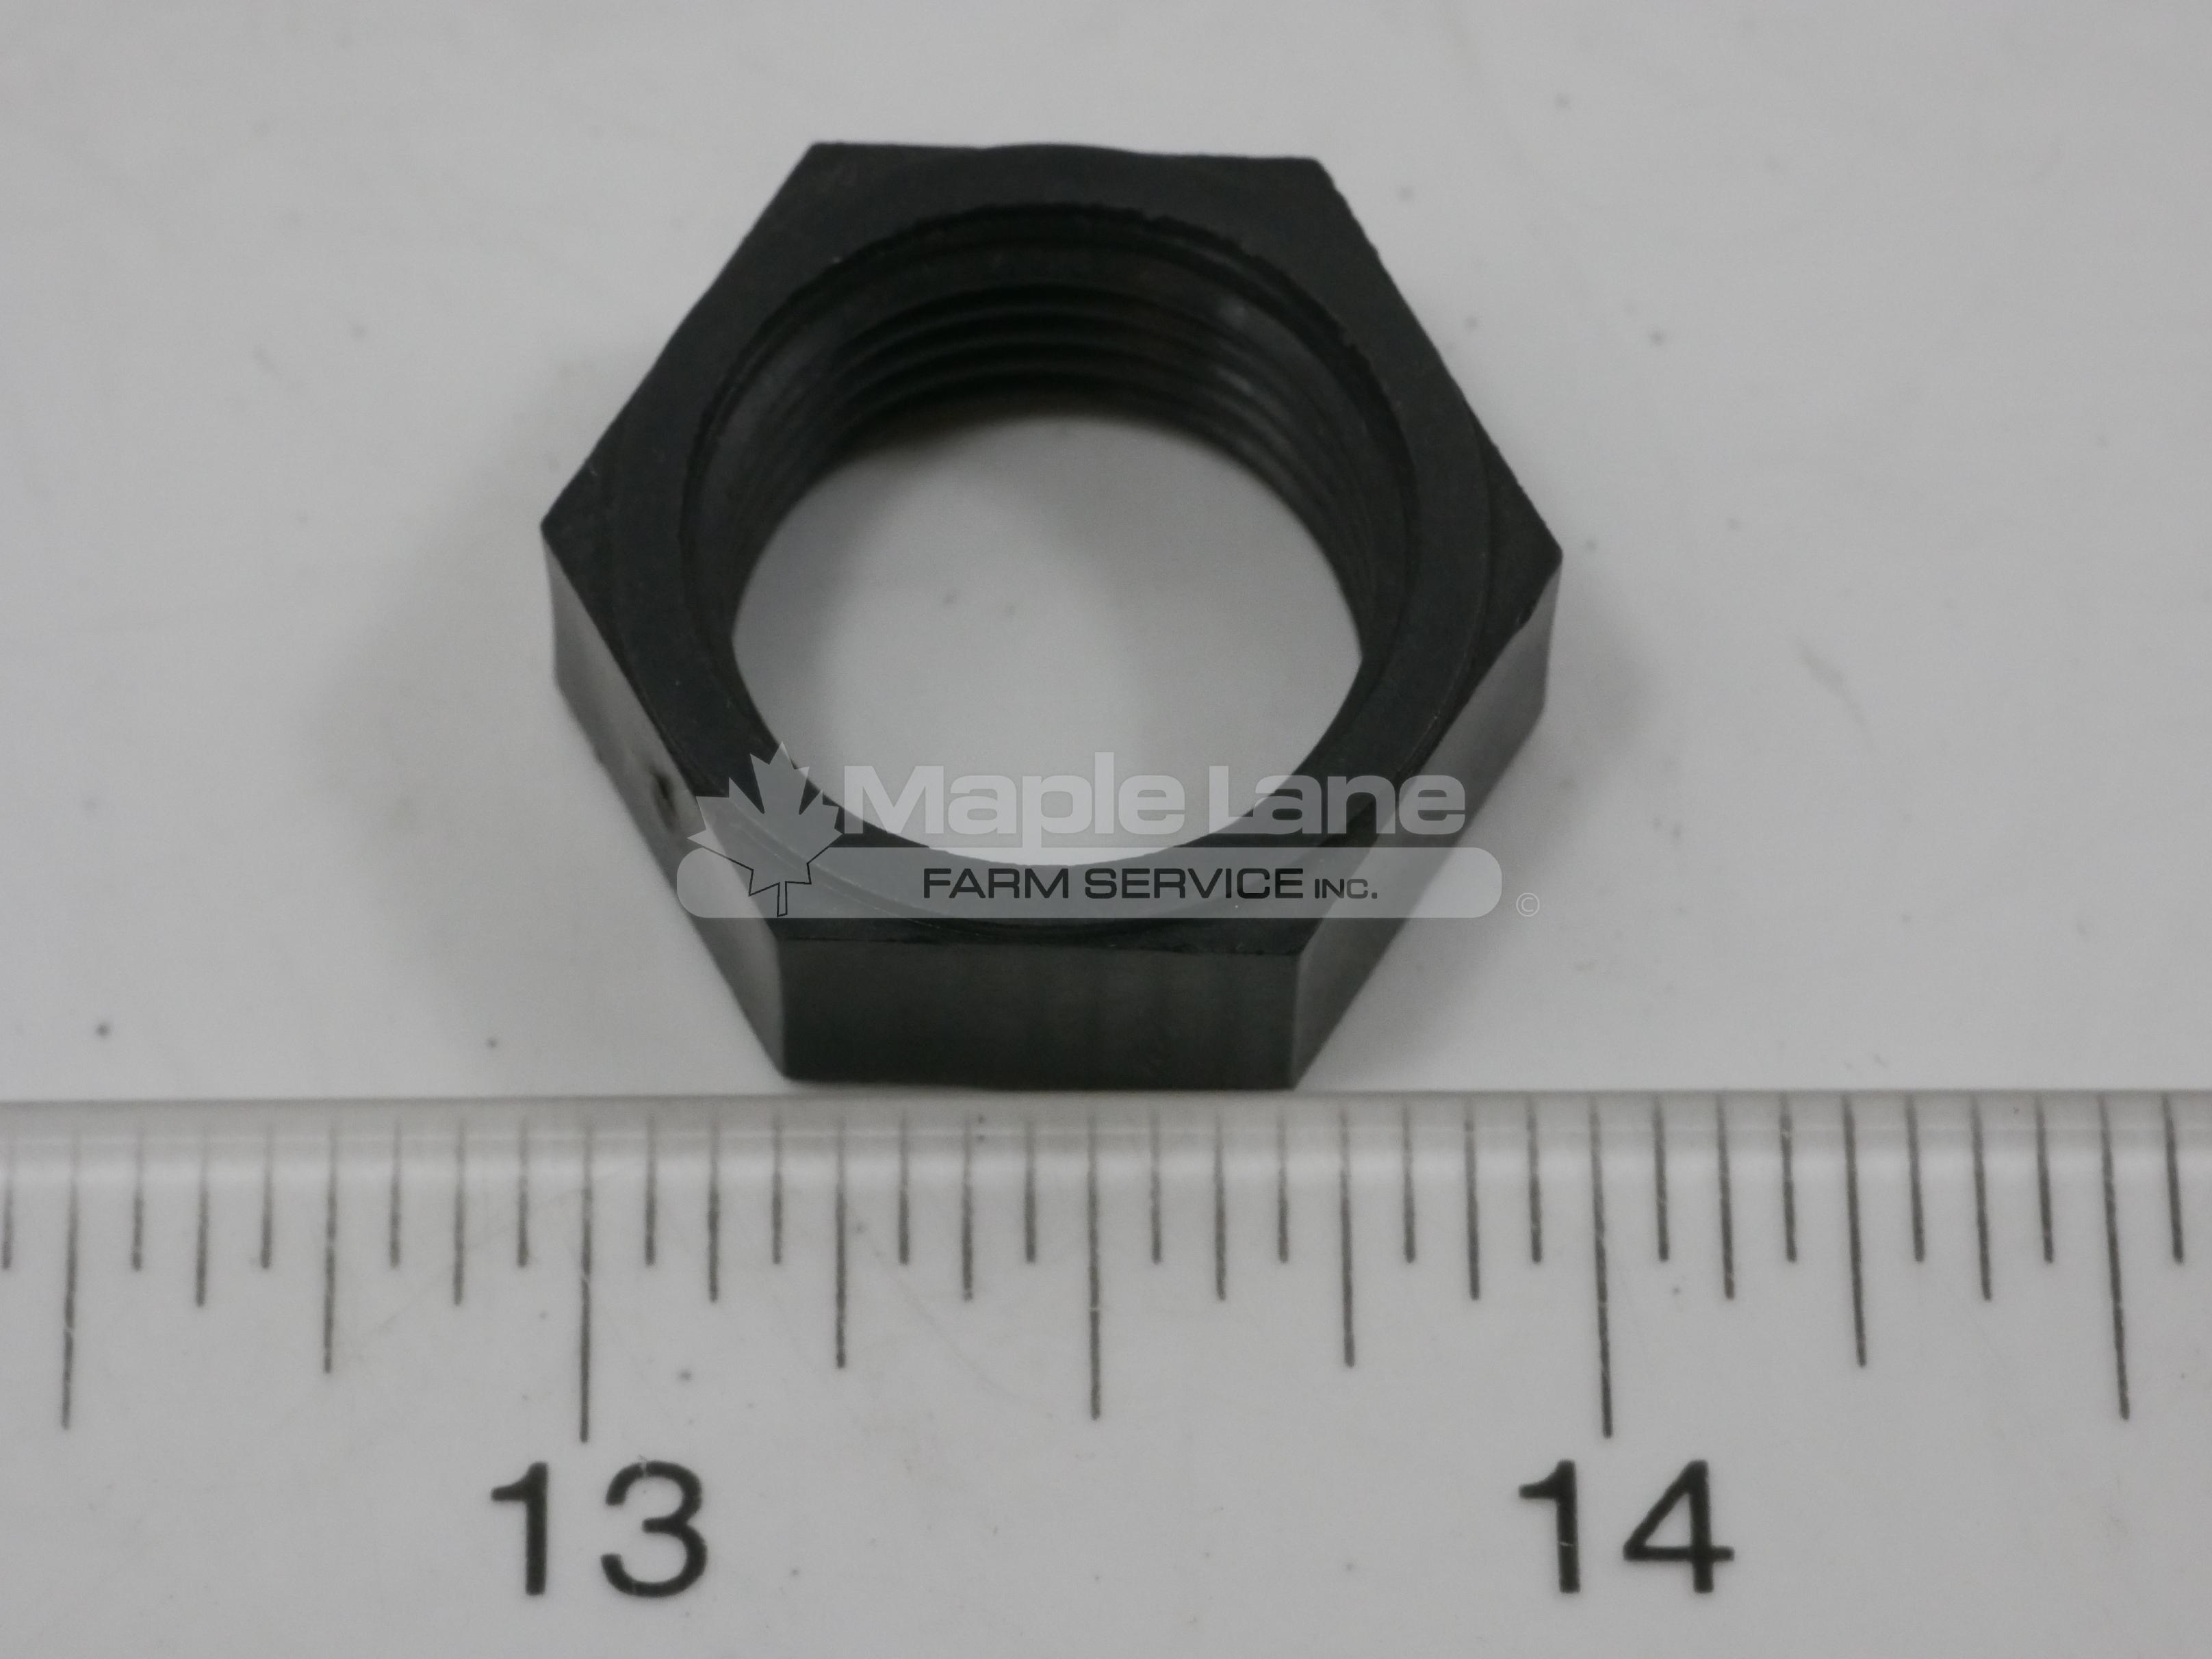 AG561540 Plastic Nut 0.68"